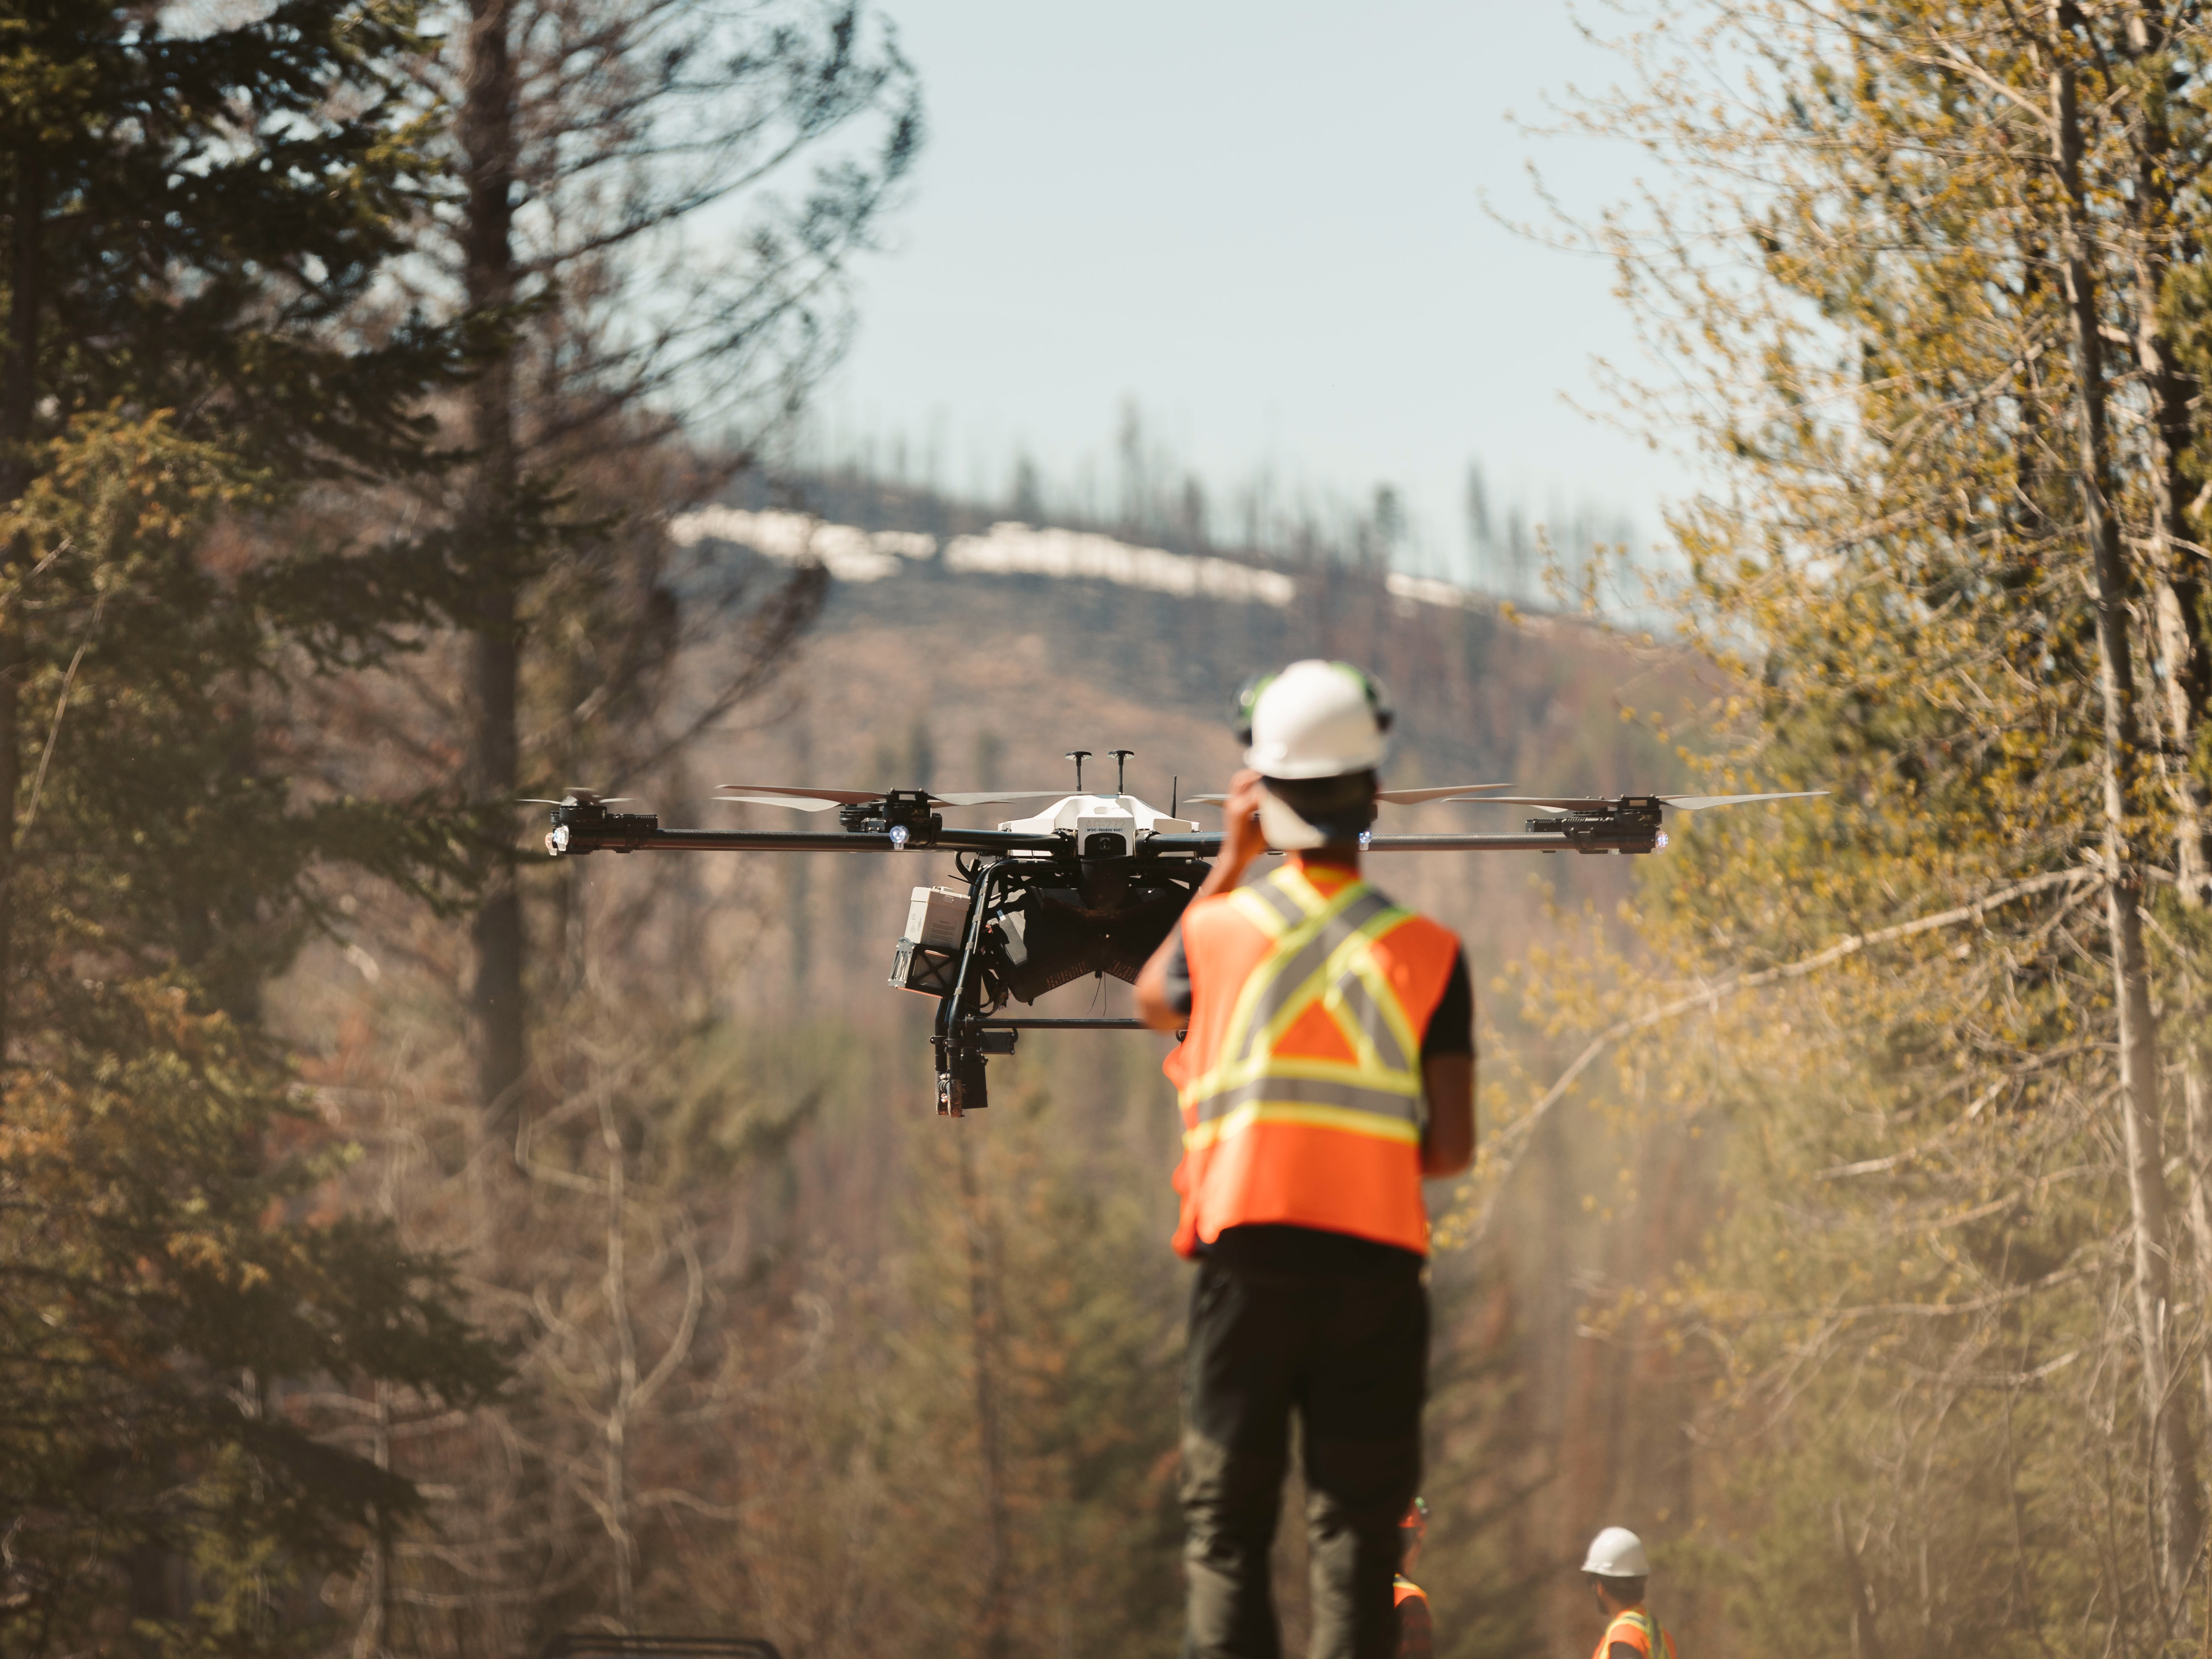 Un employé de Flash Forest pilote un drone qui larguera des capsules de semences dans le sol, plantant ainsi des millions d’arbres dans des sites ravagés par les incendies.